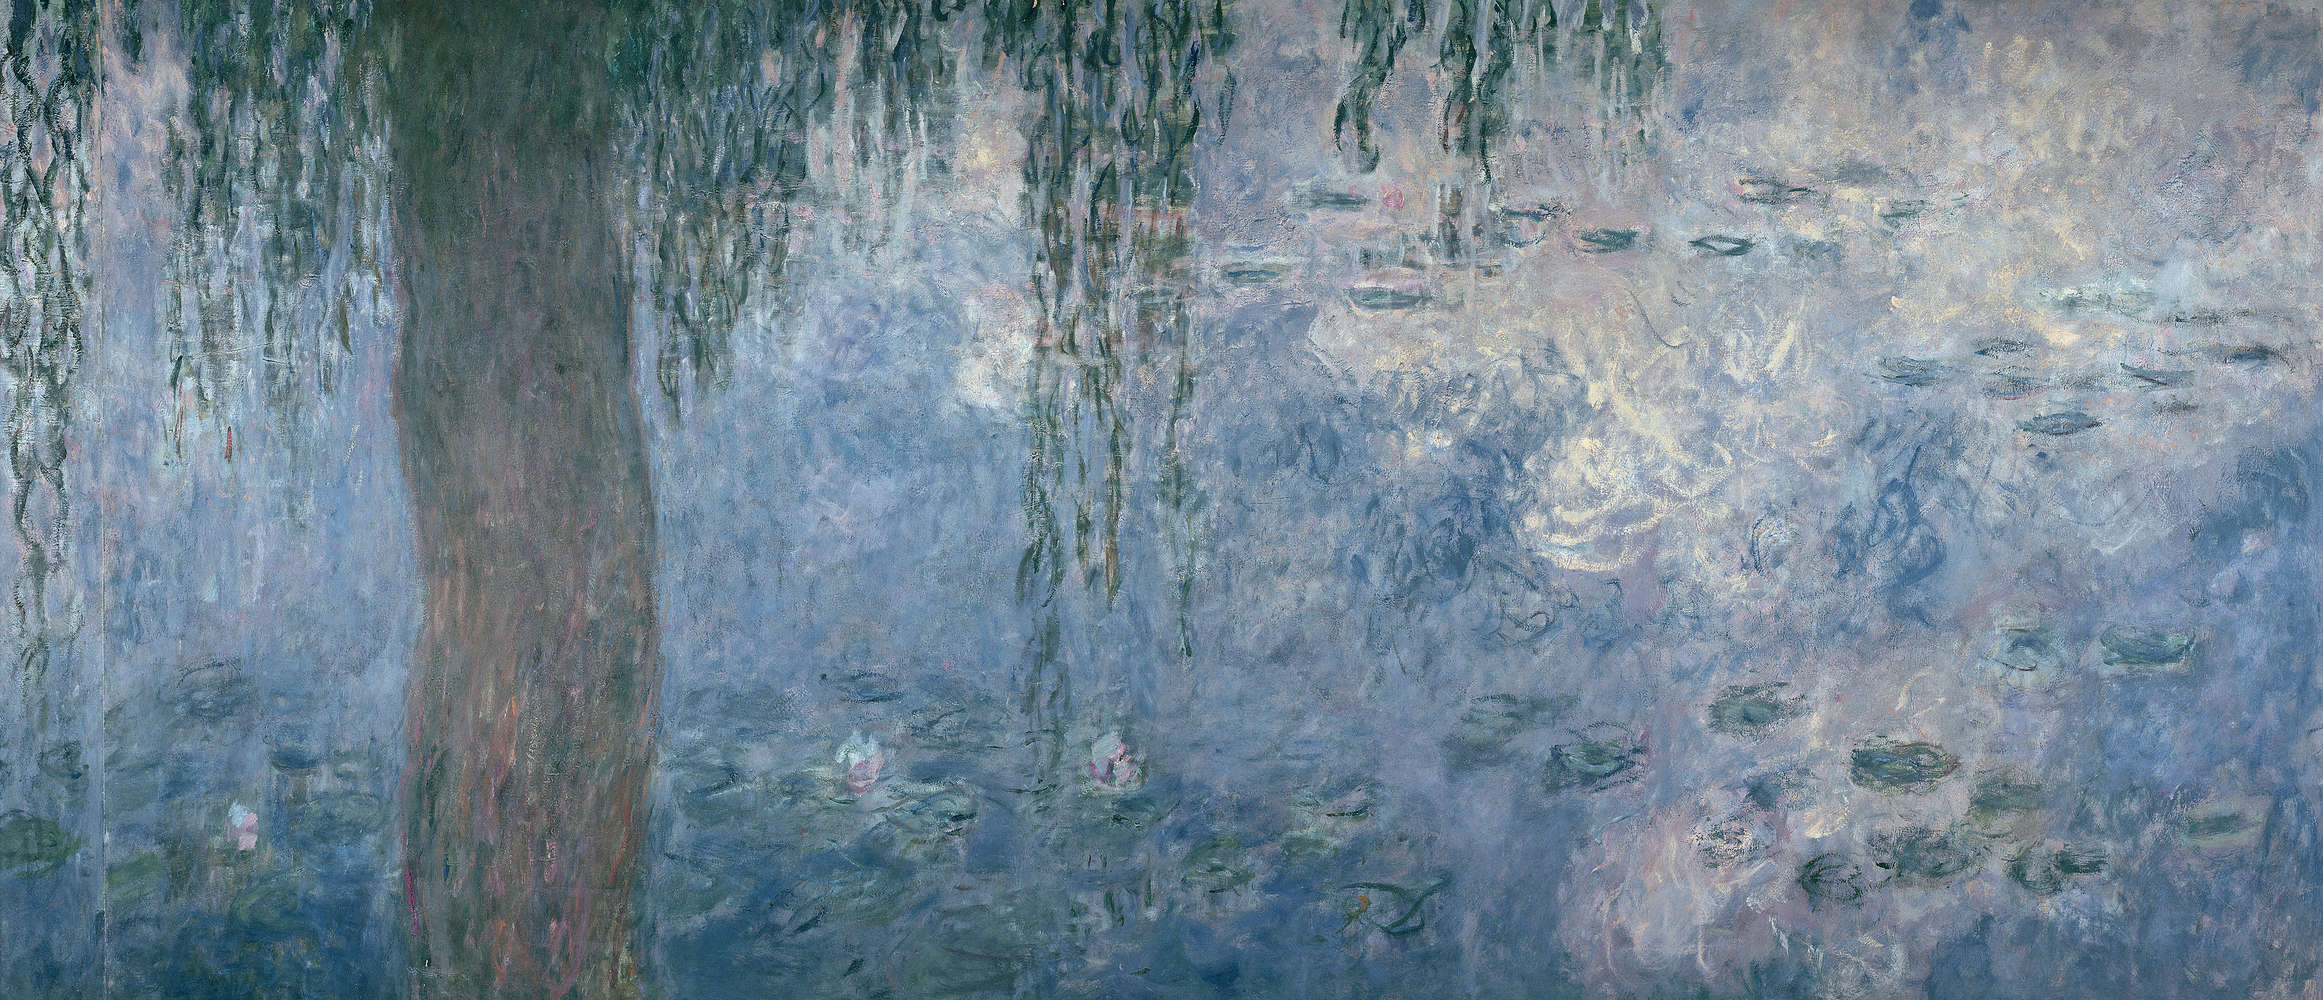             Fototapete "Seerosen: Morgen mit Trauerweiden" von Claude Monet
        